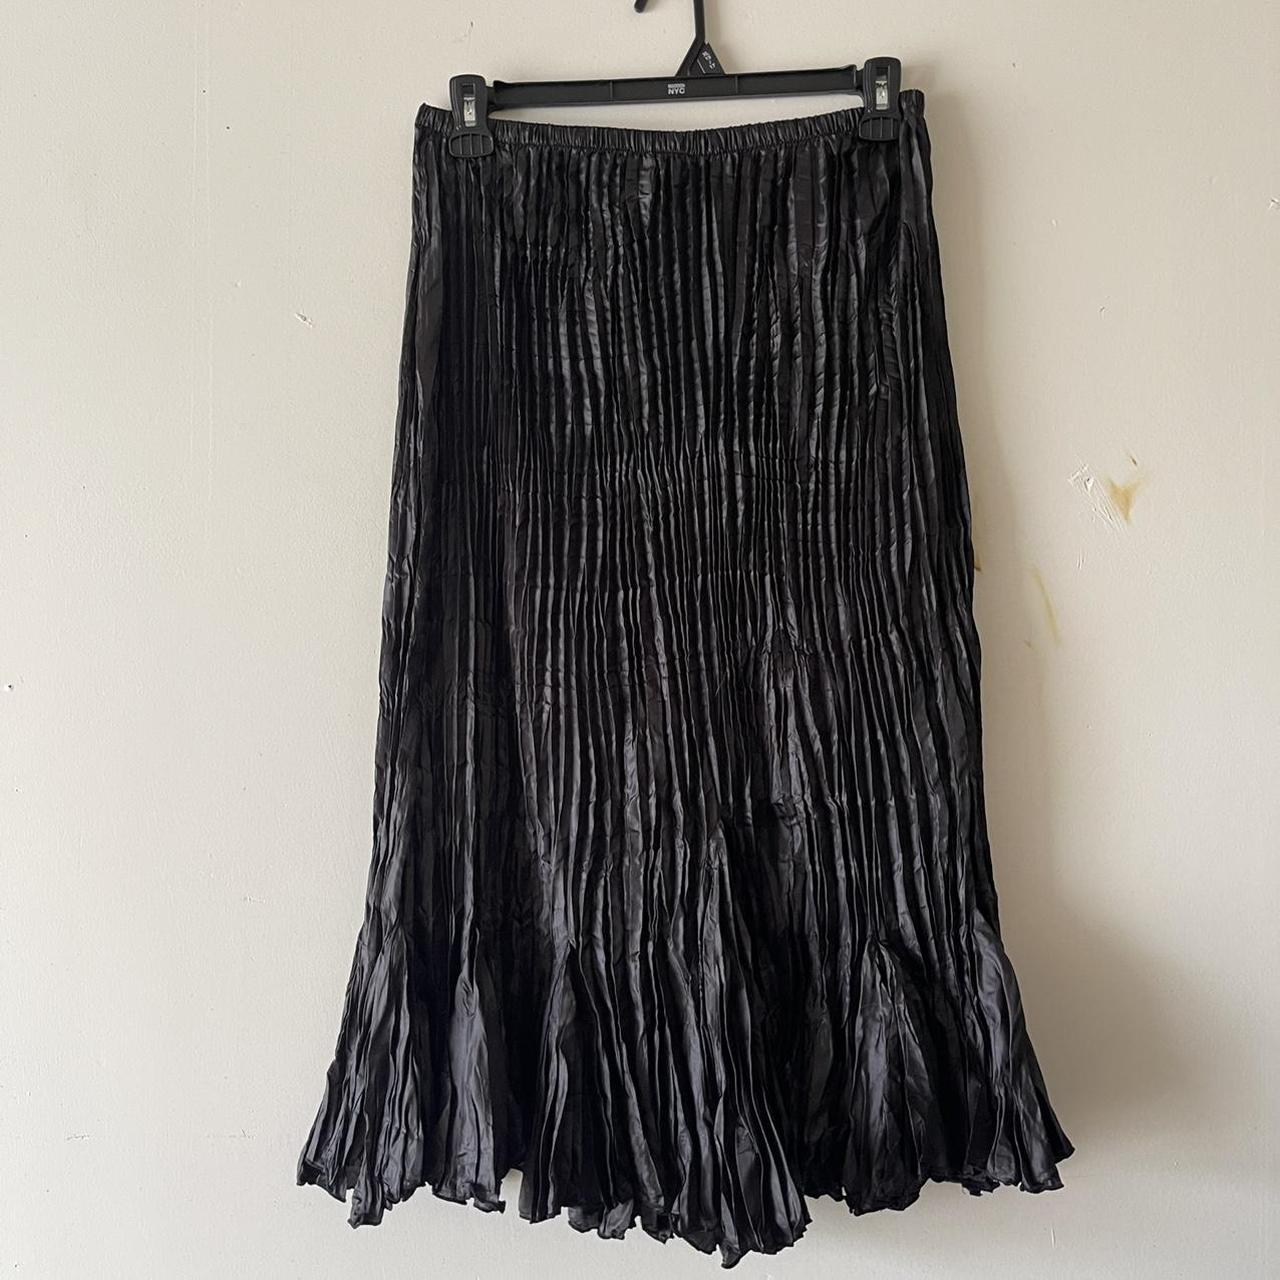 Product Image 2 - Zashi ruffle bottom skirt

Size L